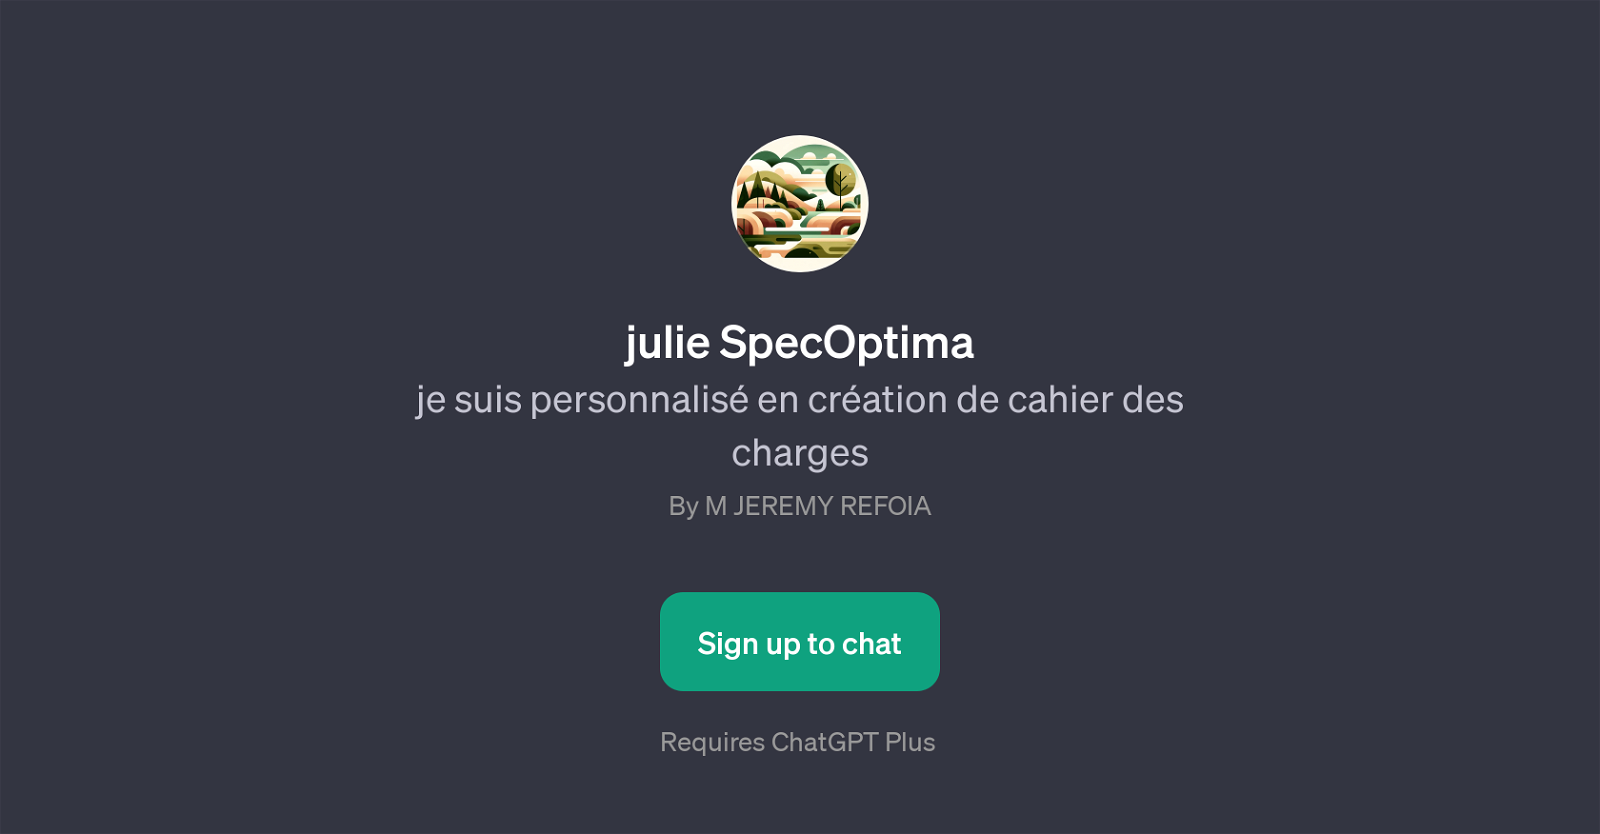 julie SpecOptima website